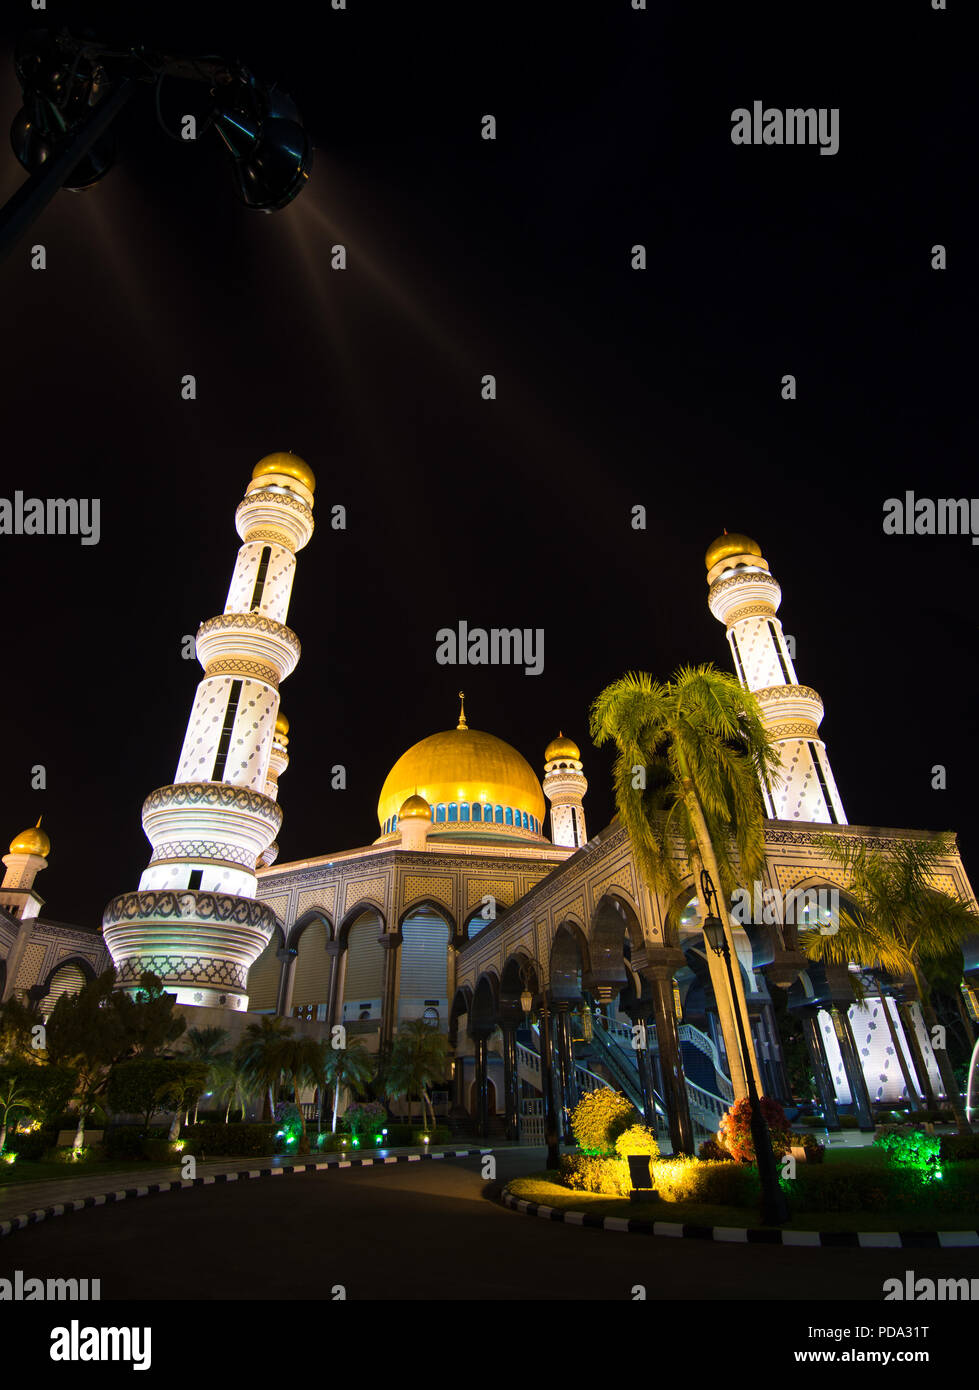 Das Jame Asr Hassanil Bolkiah Moschee, die größte Moschee von Brunei. Das Jame Asr Hassanil Bolkiah Moschee wurde 1992 erbaut im 25. Jahr von Th zu feiern. Stockfoto